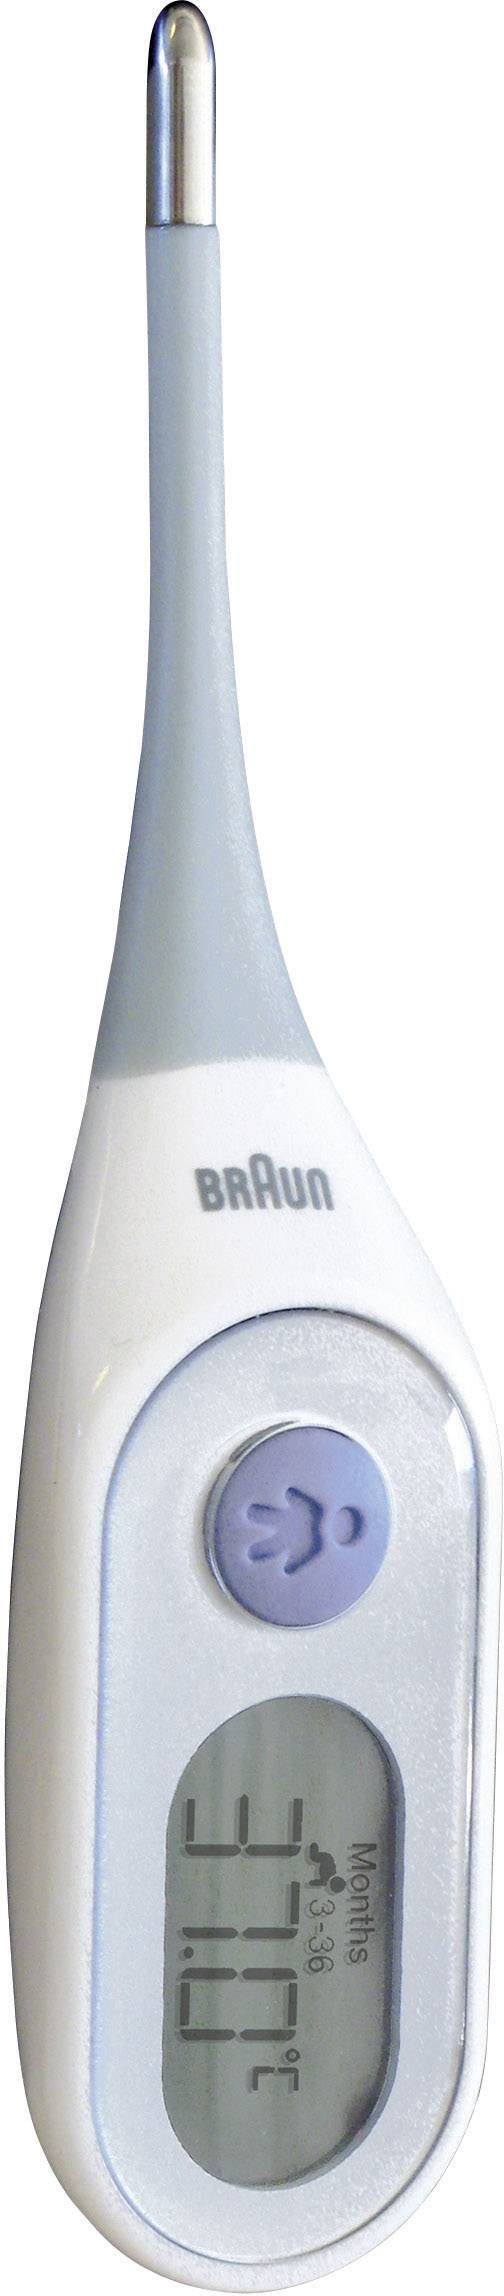 Braun PRT2000 Fieberthermometer Fieberalarm Mit kaufen